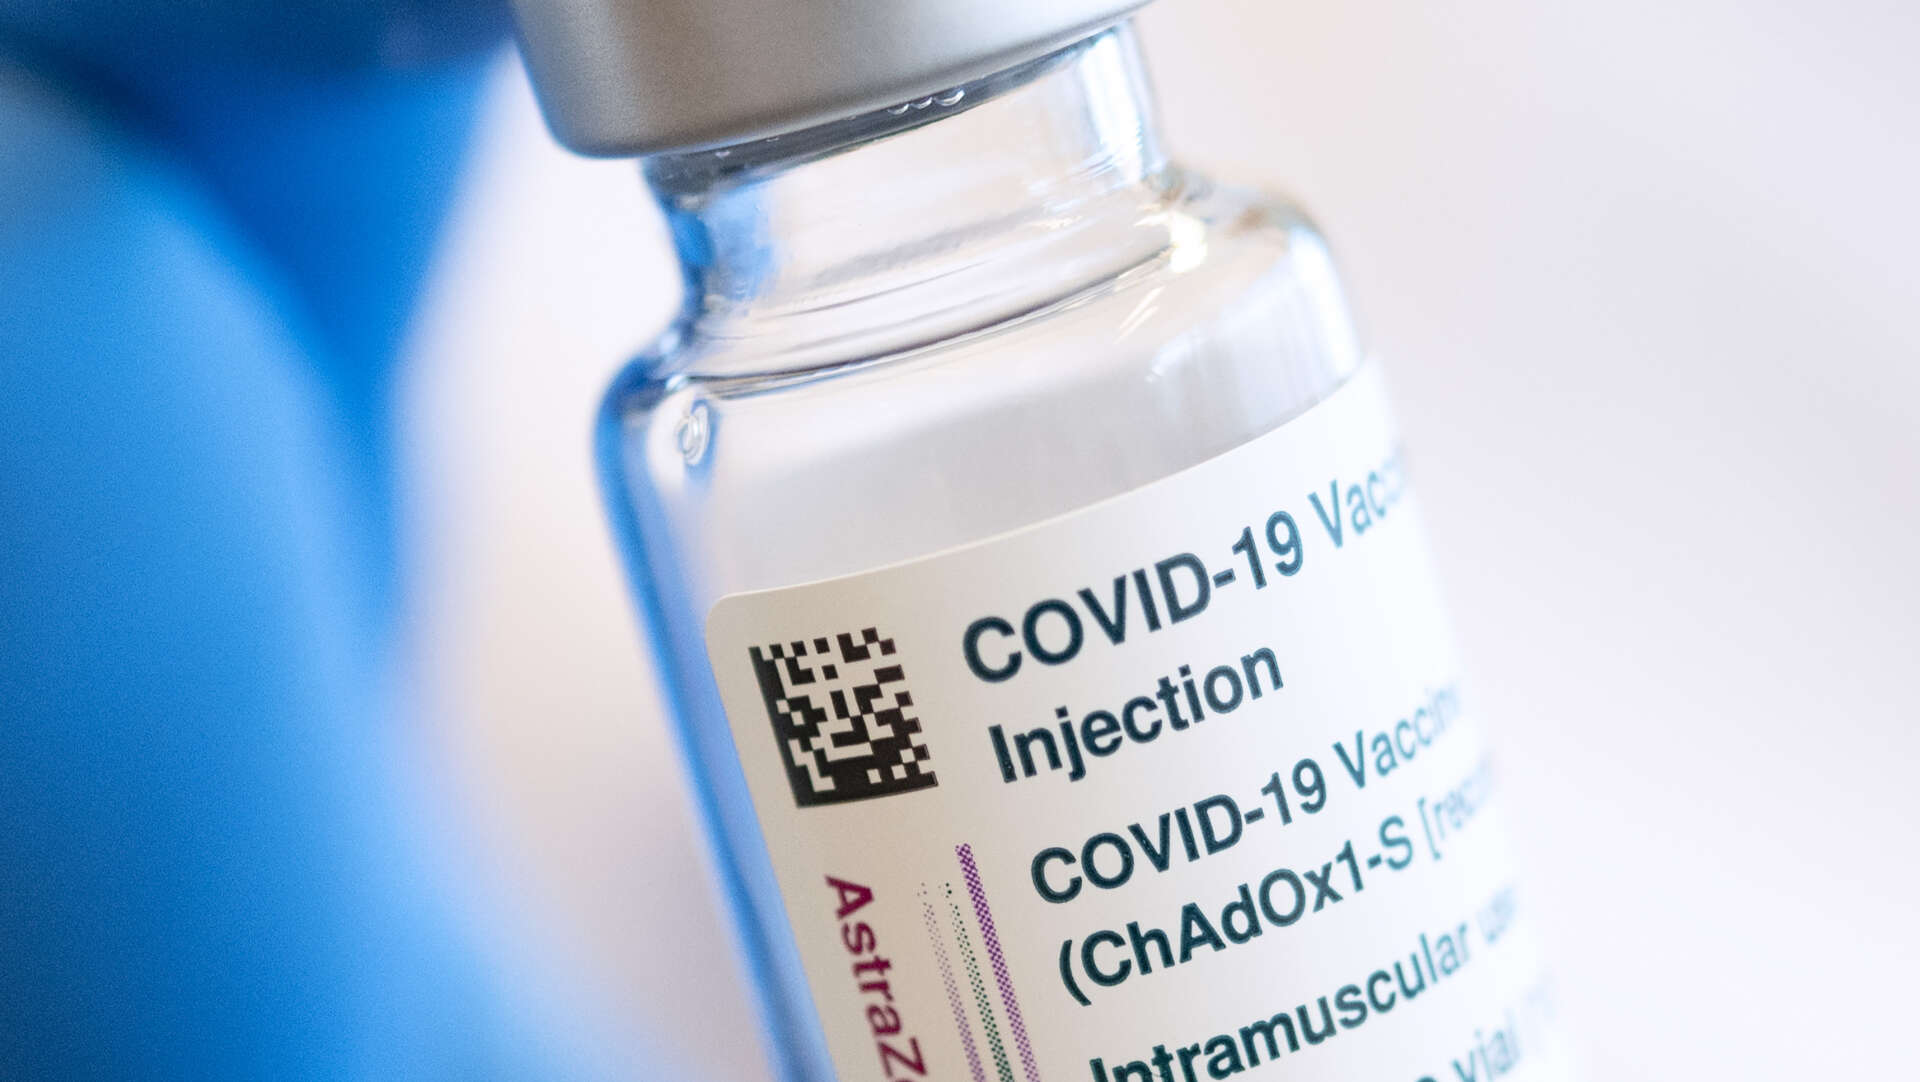 Vaccinationen med Astra Zenecas Covid-19 vaccin har pausats i Sverige efter rapporter om fall med blodproppar bland personer som fått vaccinet. Arkivbild